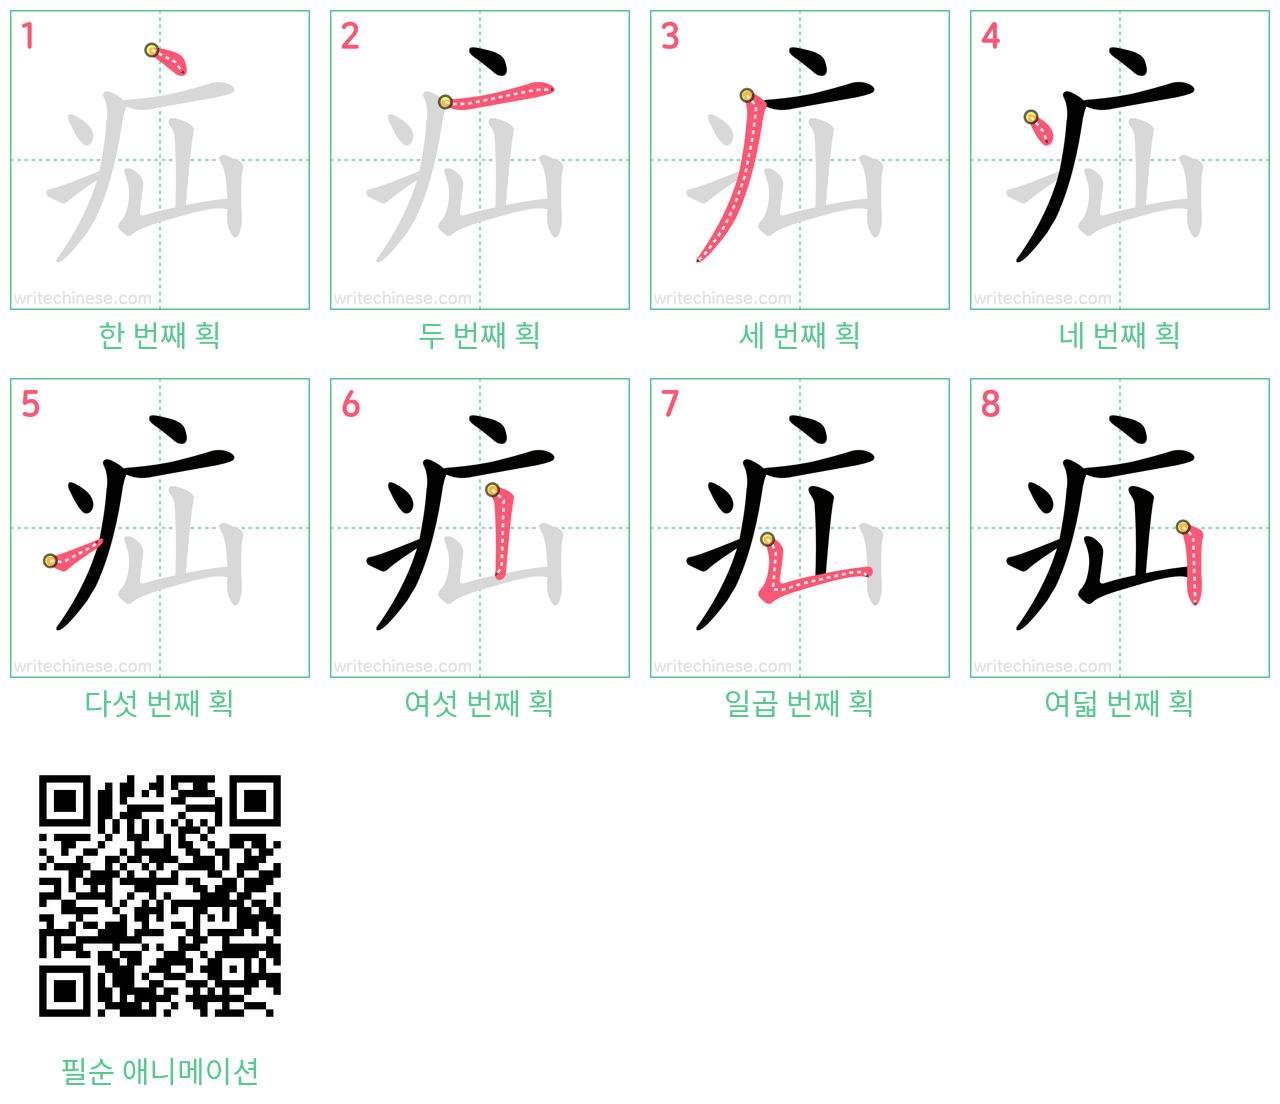 疝 step-by-step stroke order diagrams